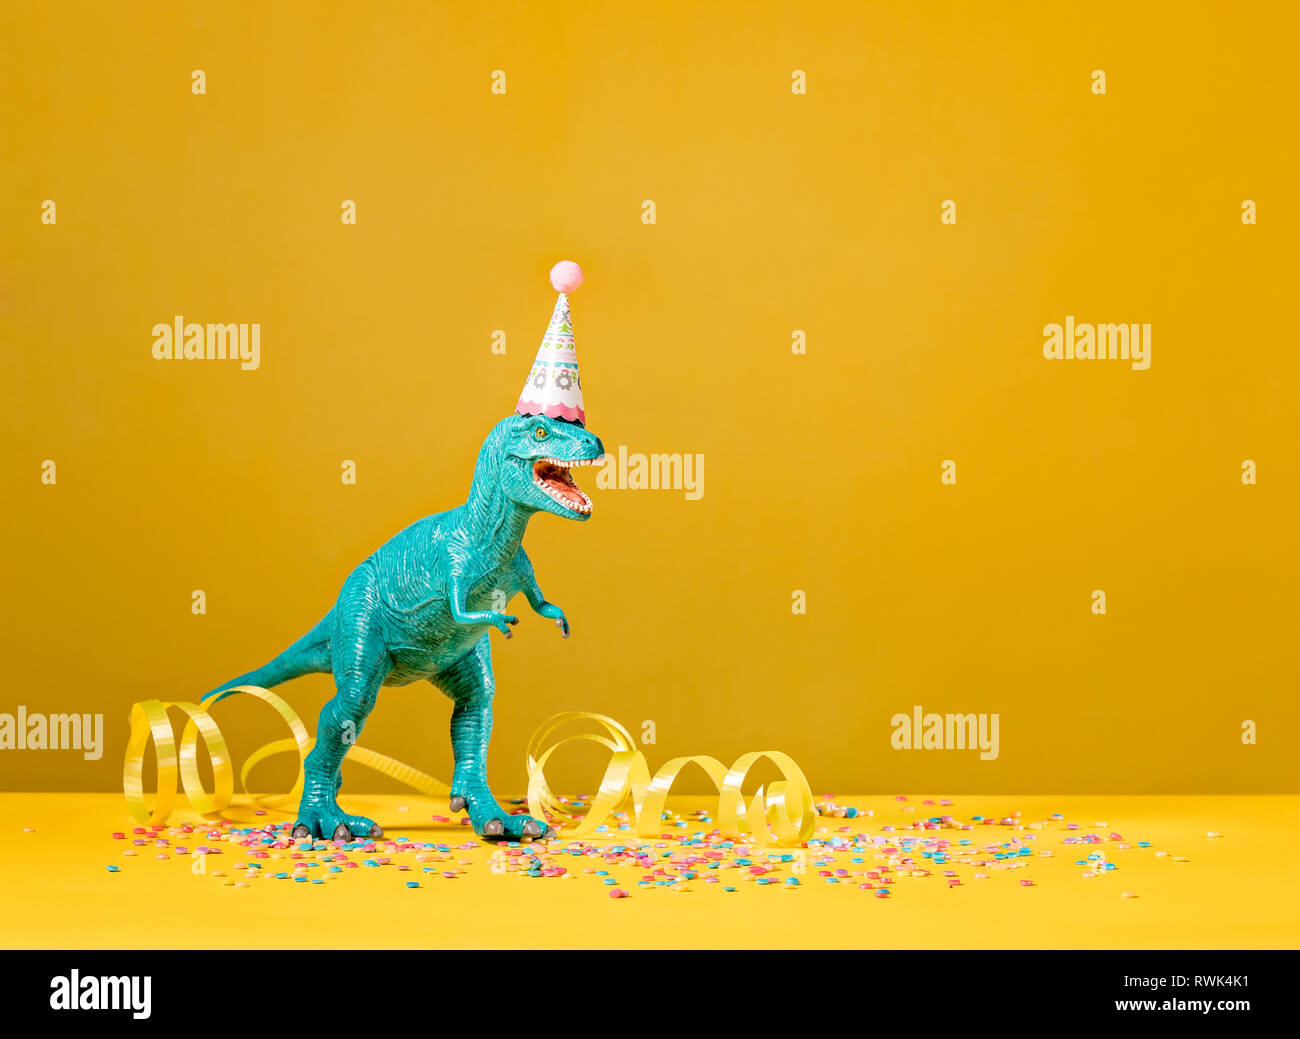 Spielzeug Dinosaurier mit Geburtstag Hut auf einem gelben Hintergrund. Stockfoto